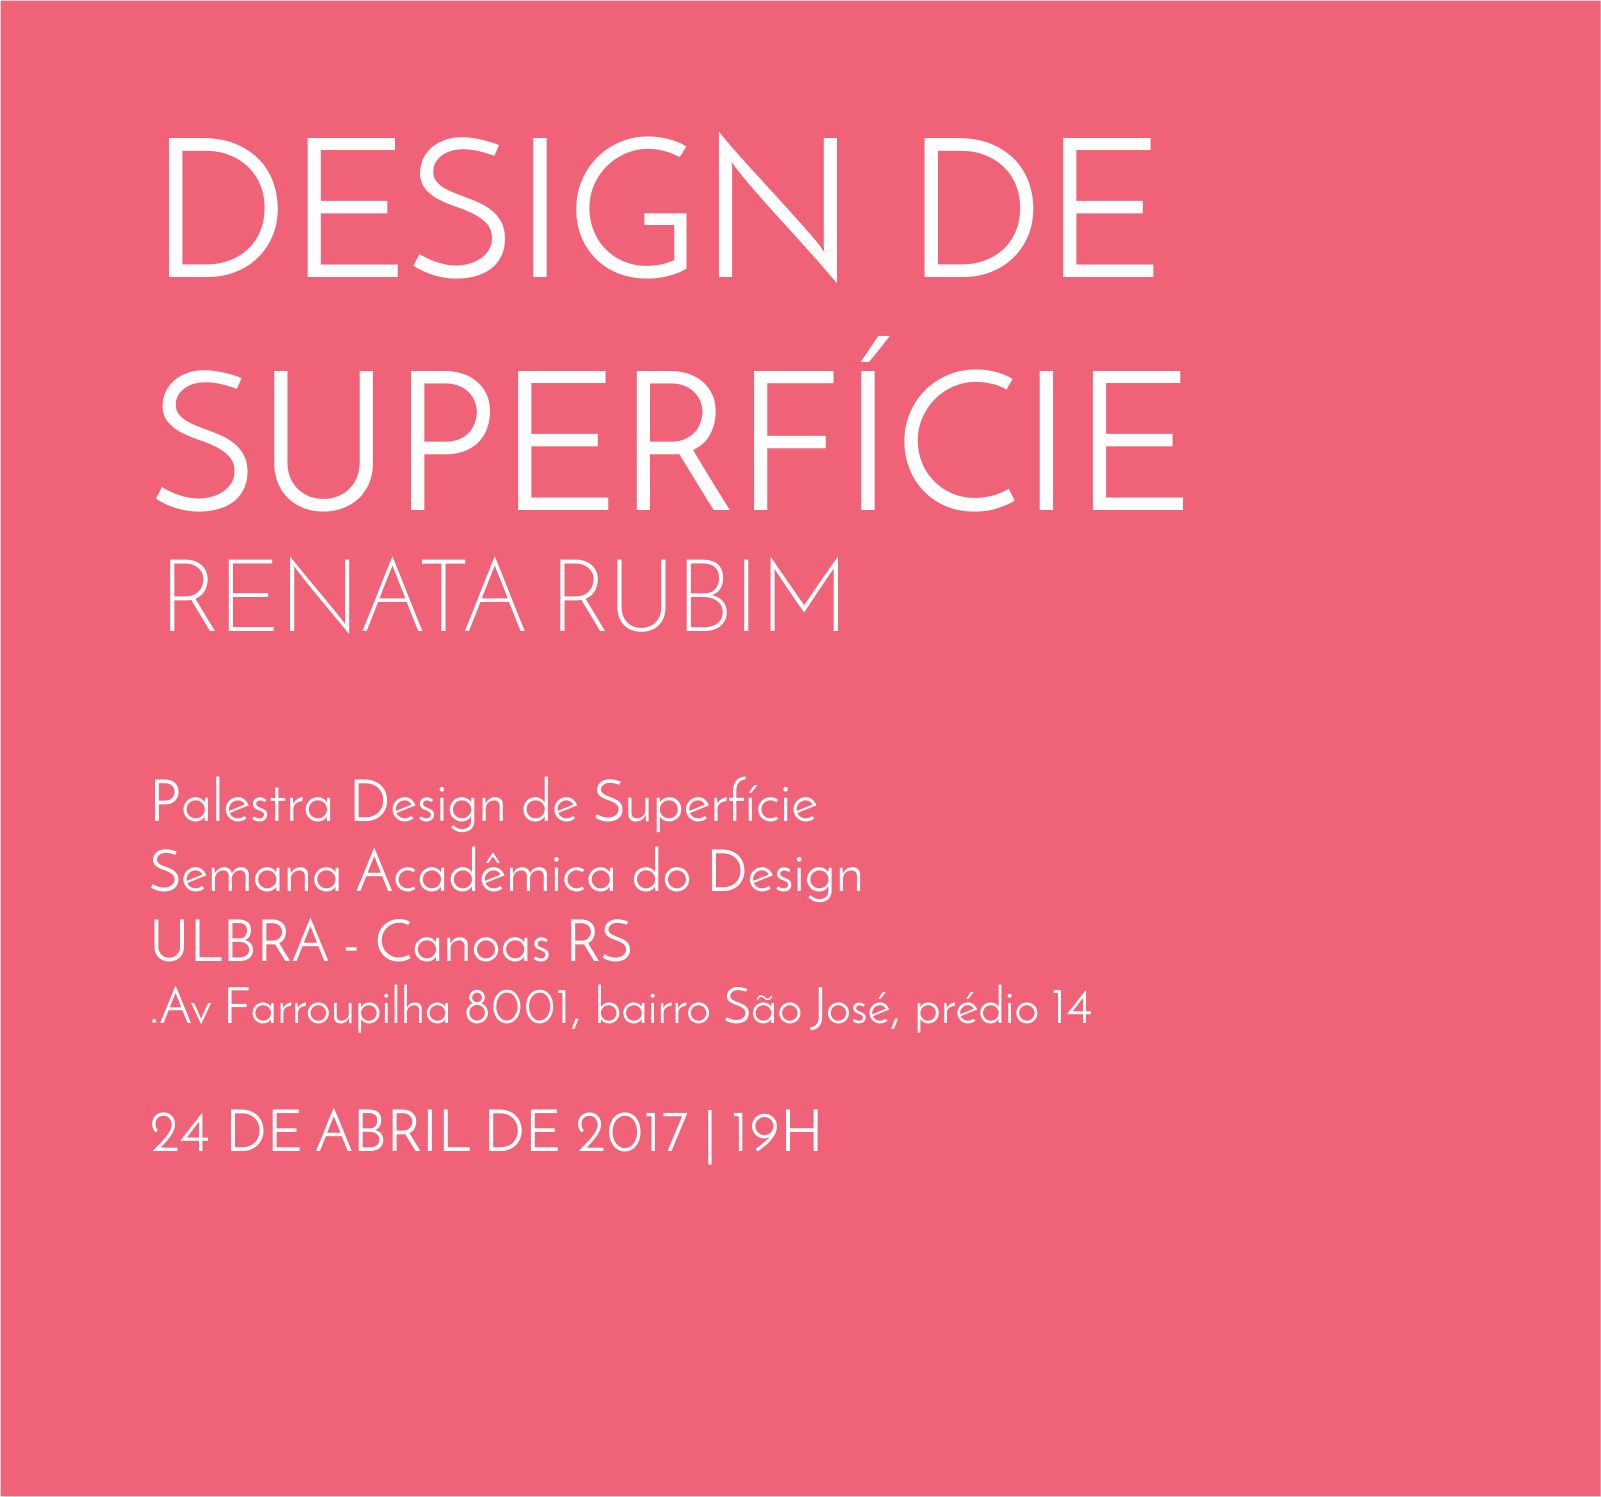 Palestra Design de Superfície | ULBRA